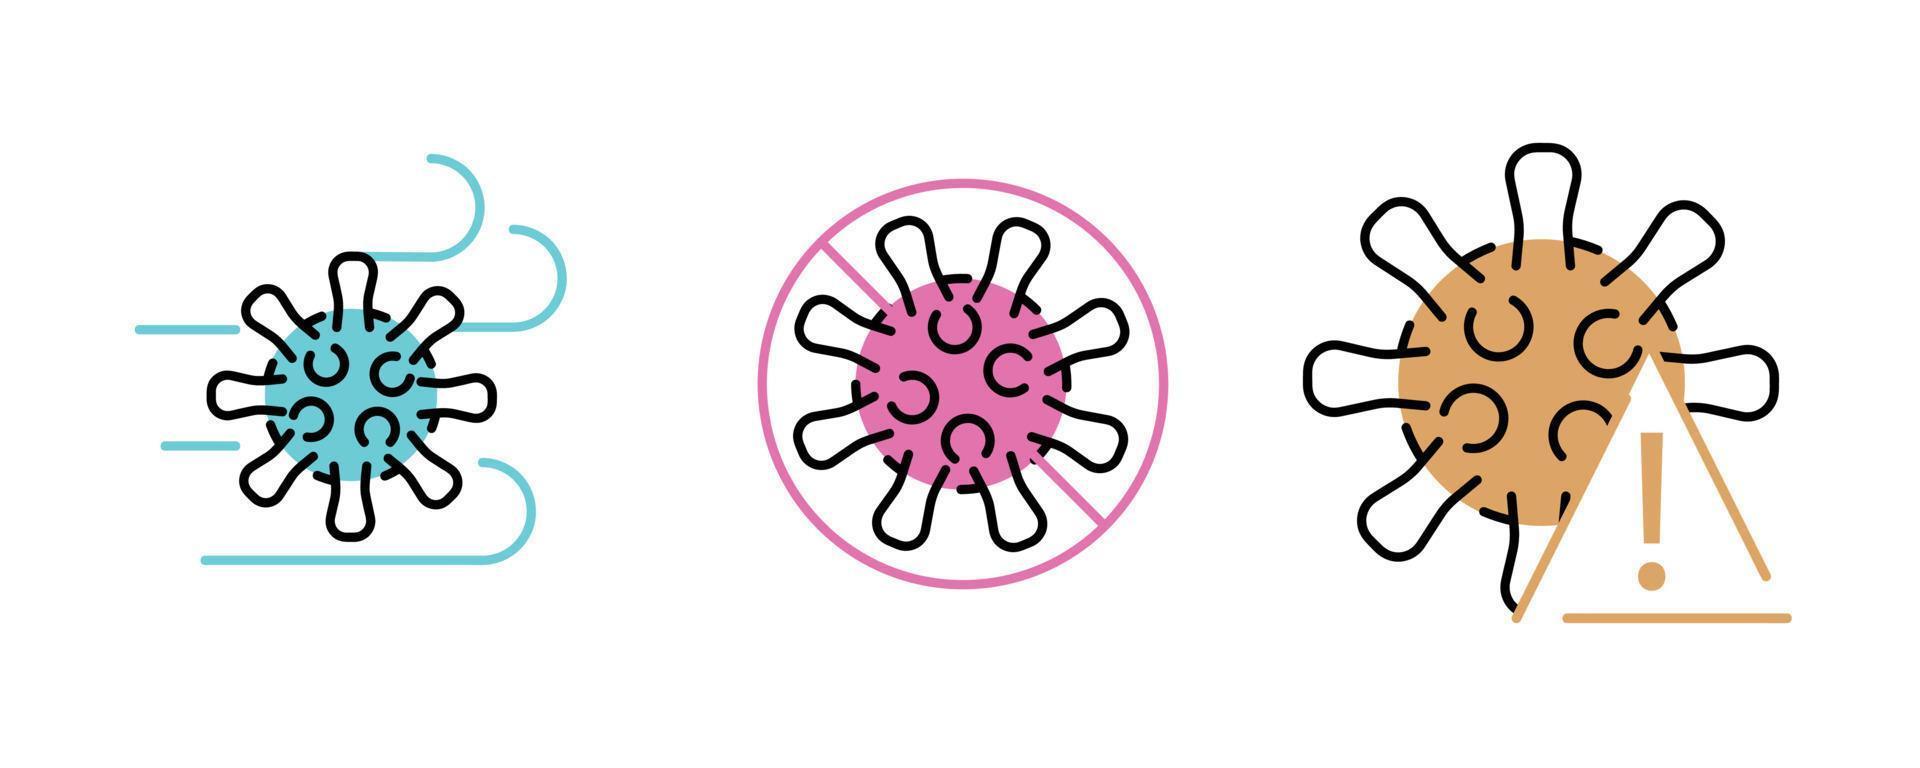 icône de virus définie en 3 épaisseurs différentes et colorée. vecteur